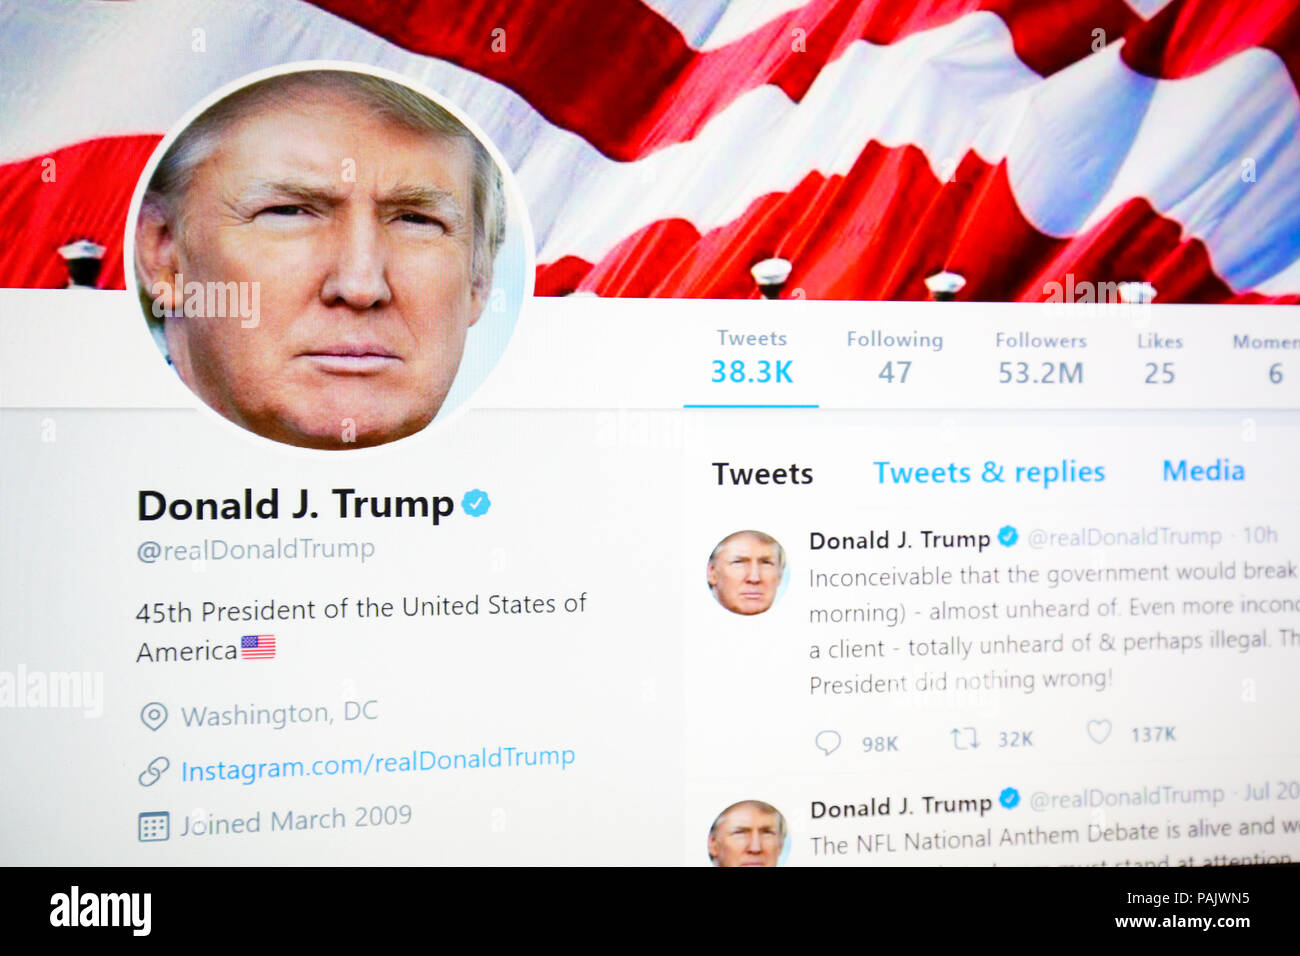 Bruxelles, Belgique - 21 juillet 2018 : La page twitter officiel de Donald J. Trump, 45e Président des Etats-Unis. Banque D'Images